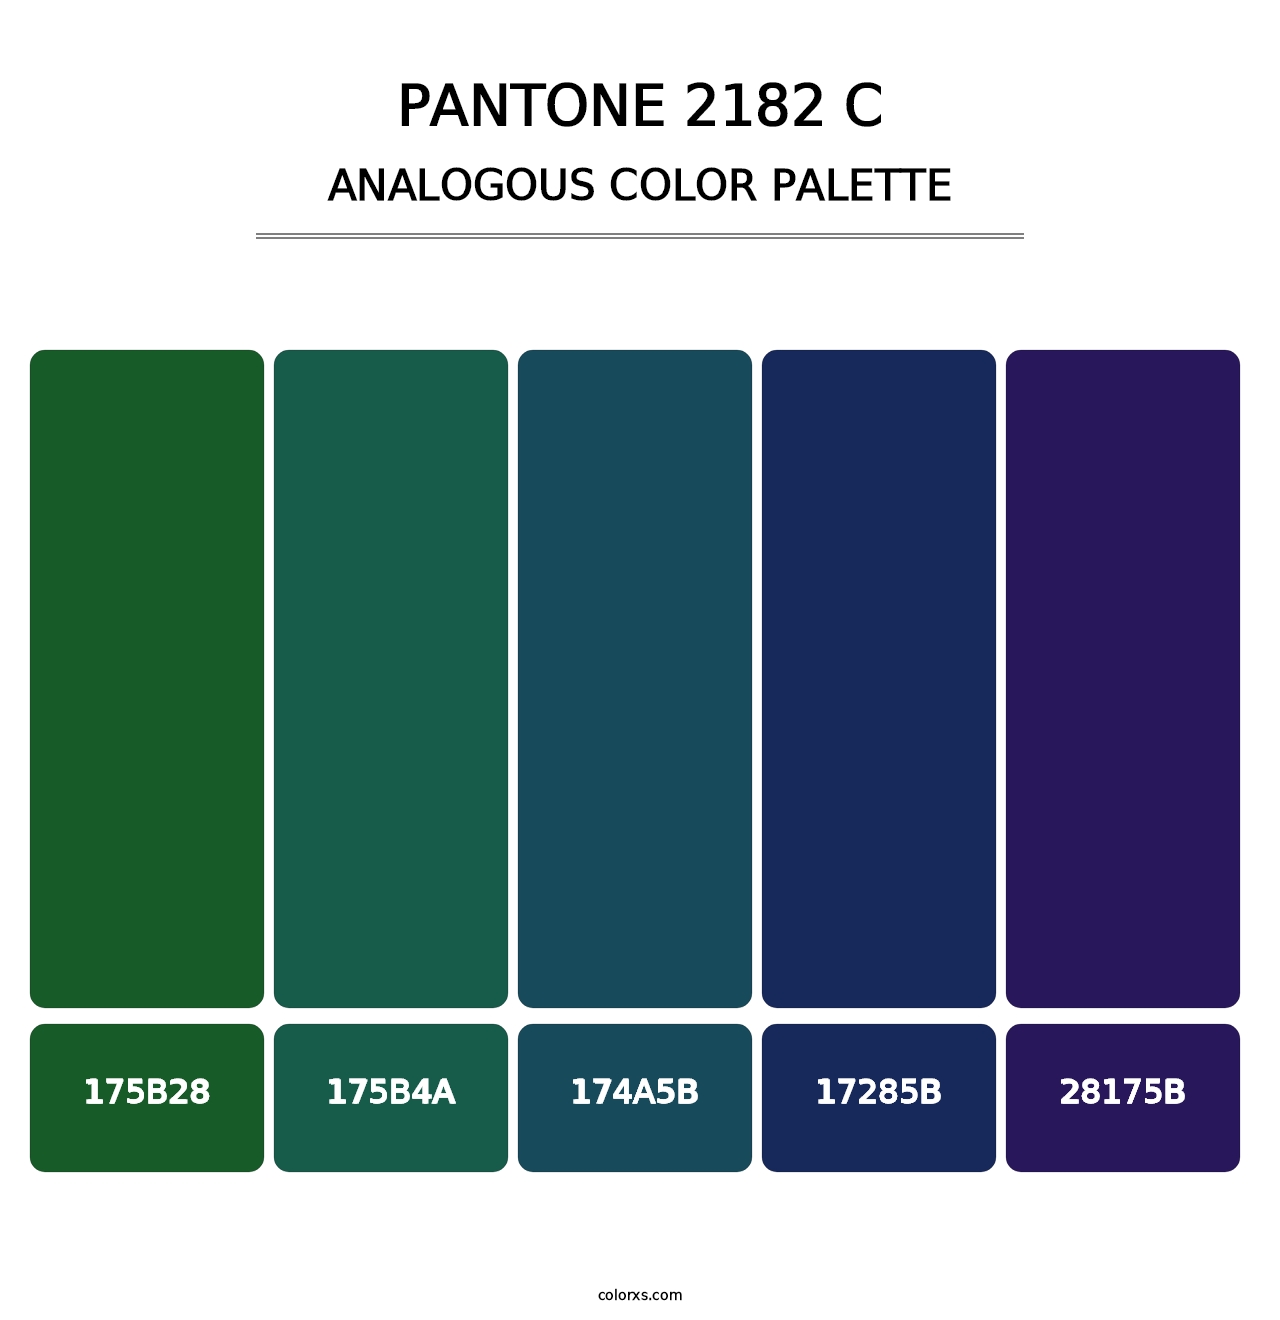 PANTONE 2182 C - Analogous Color Palette